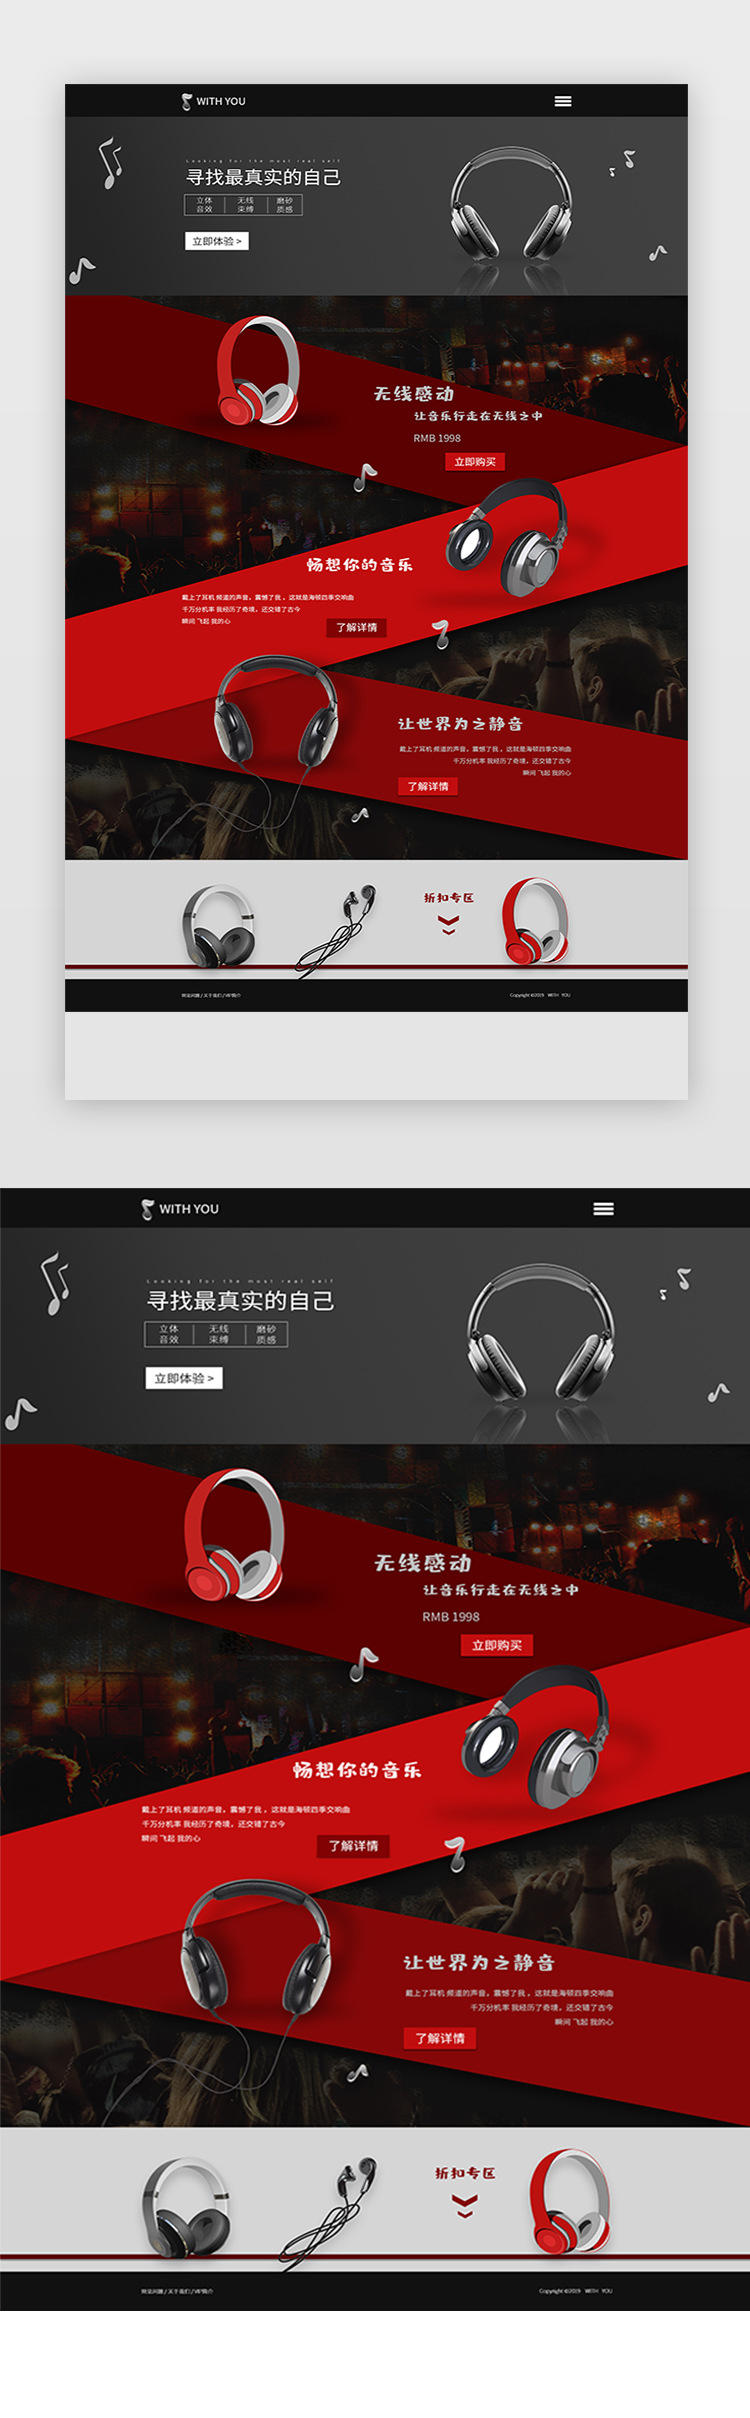 红黑色调科技感耳机专题页图片